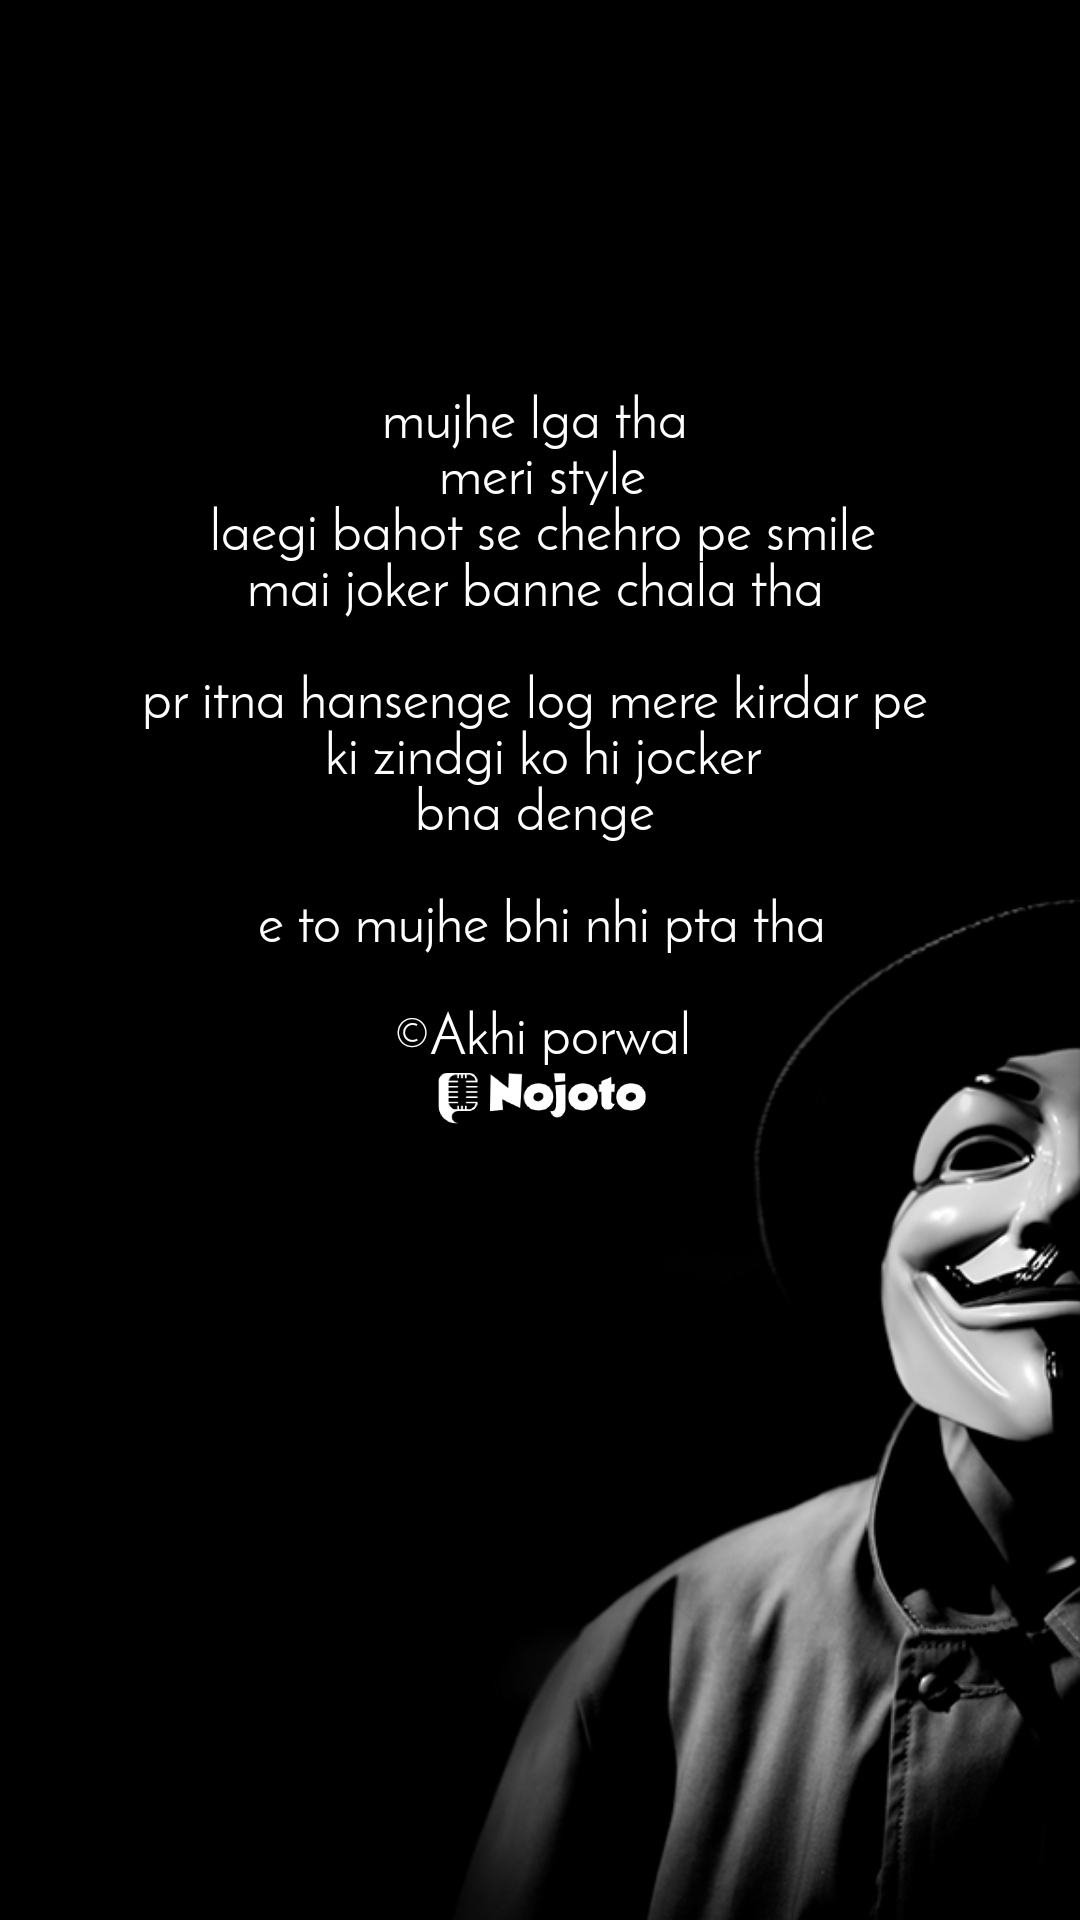 #Joker